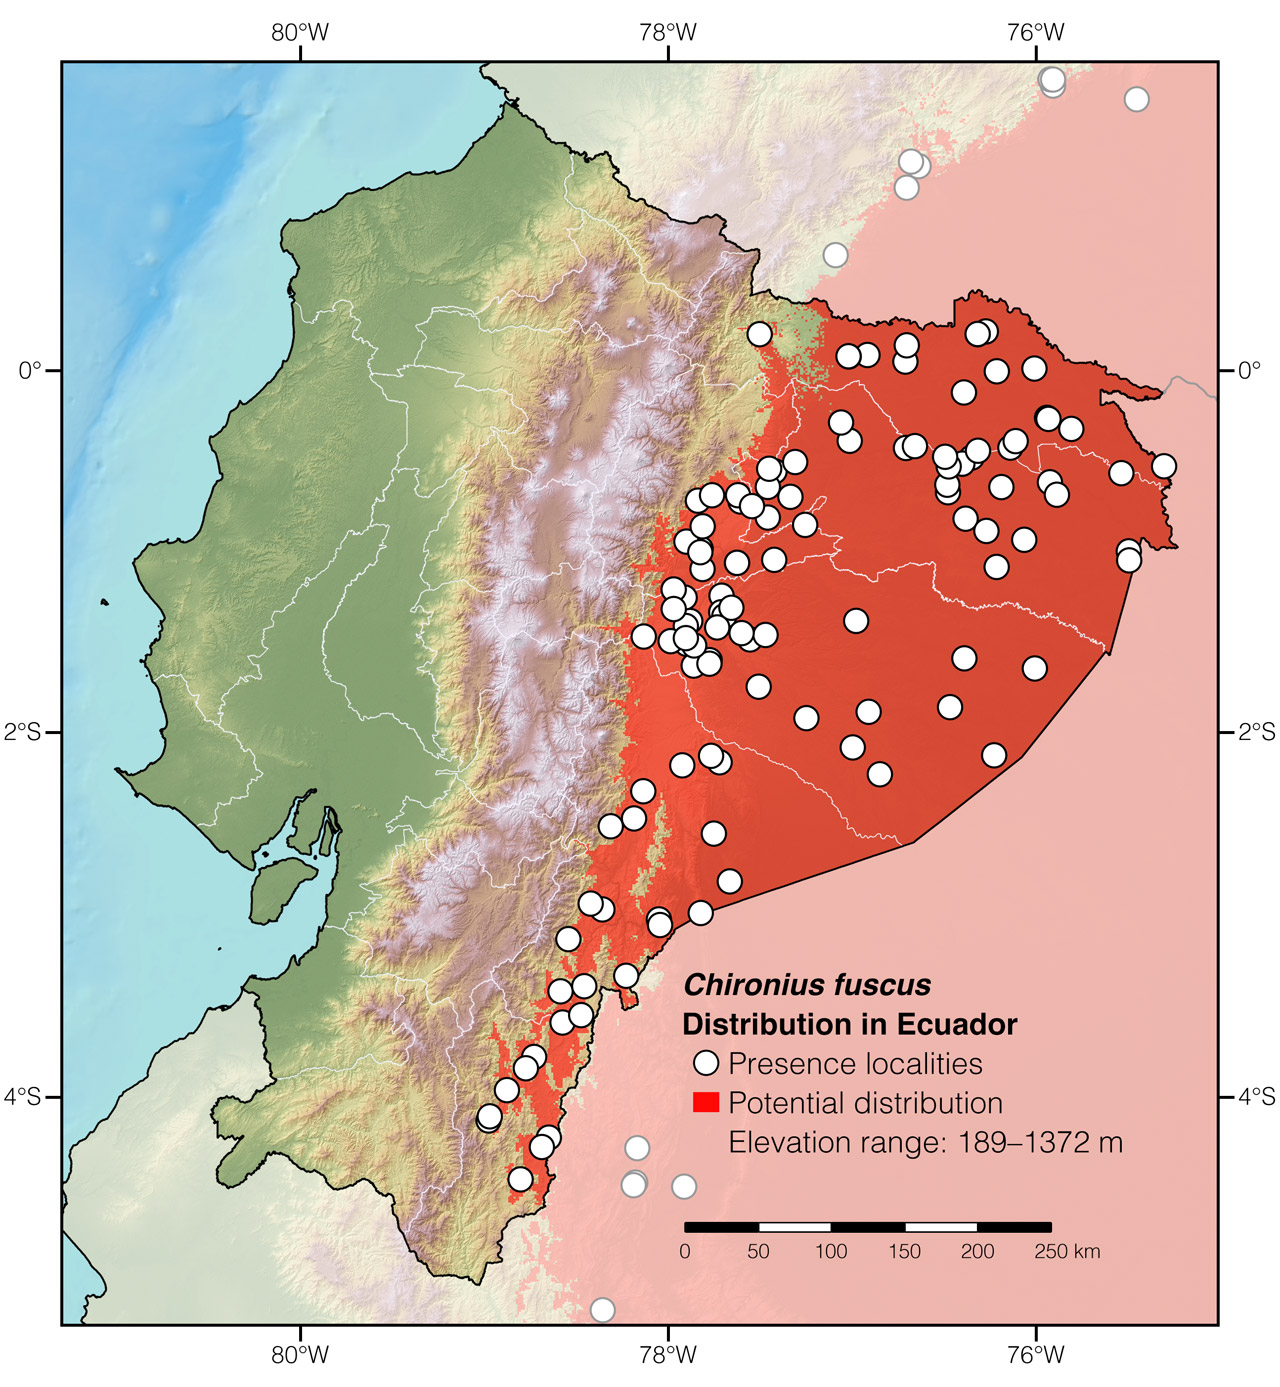 Distribution of Chironius fuscus in Ecuador